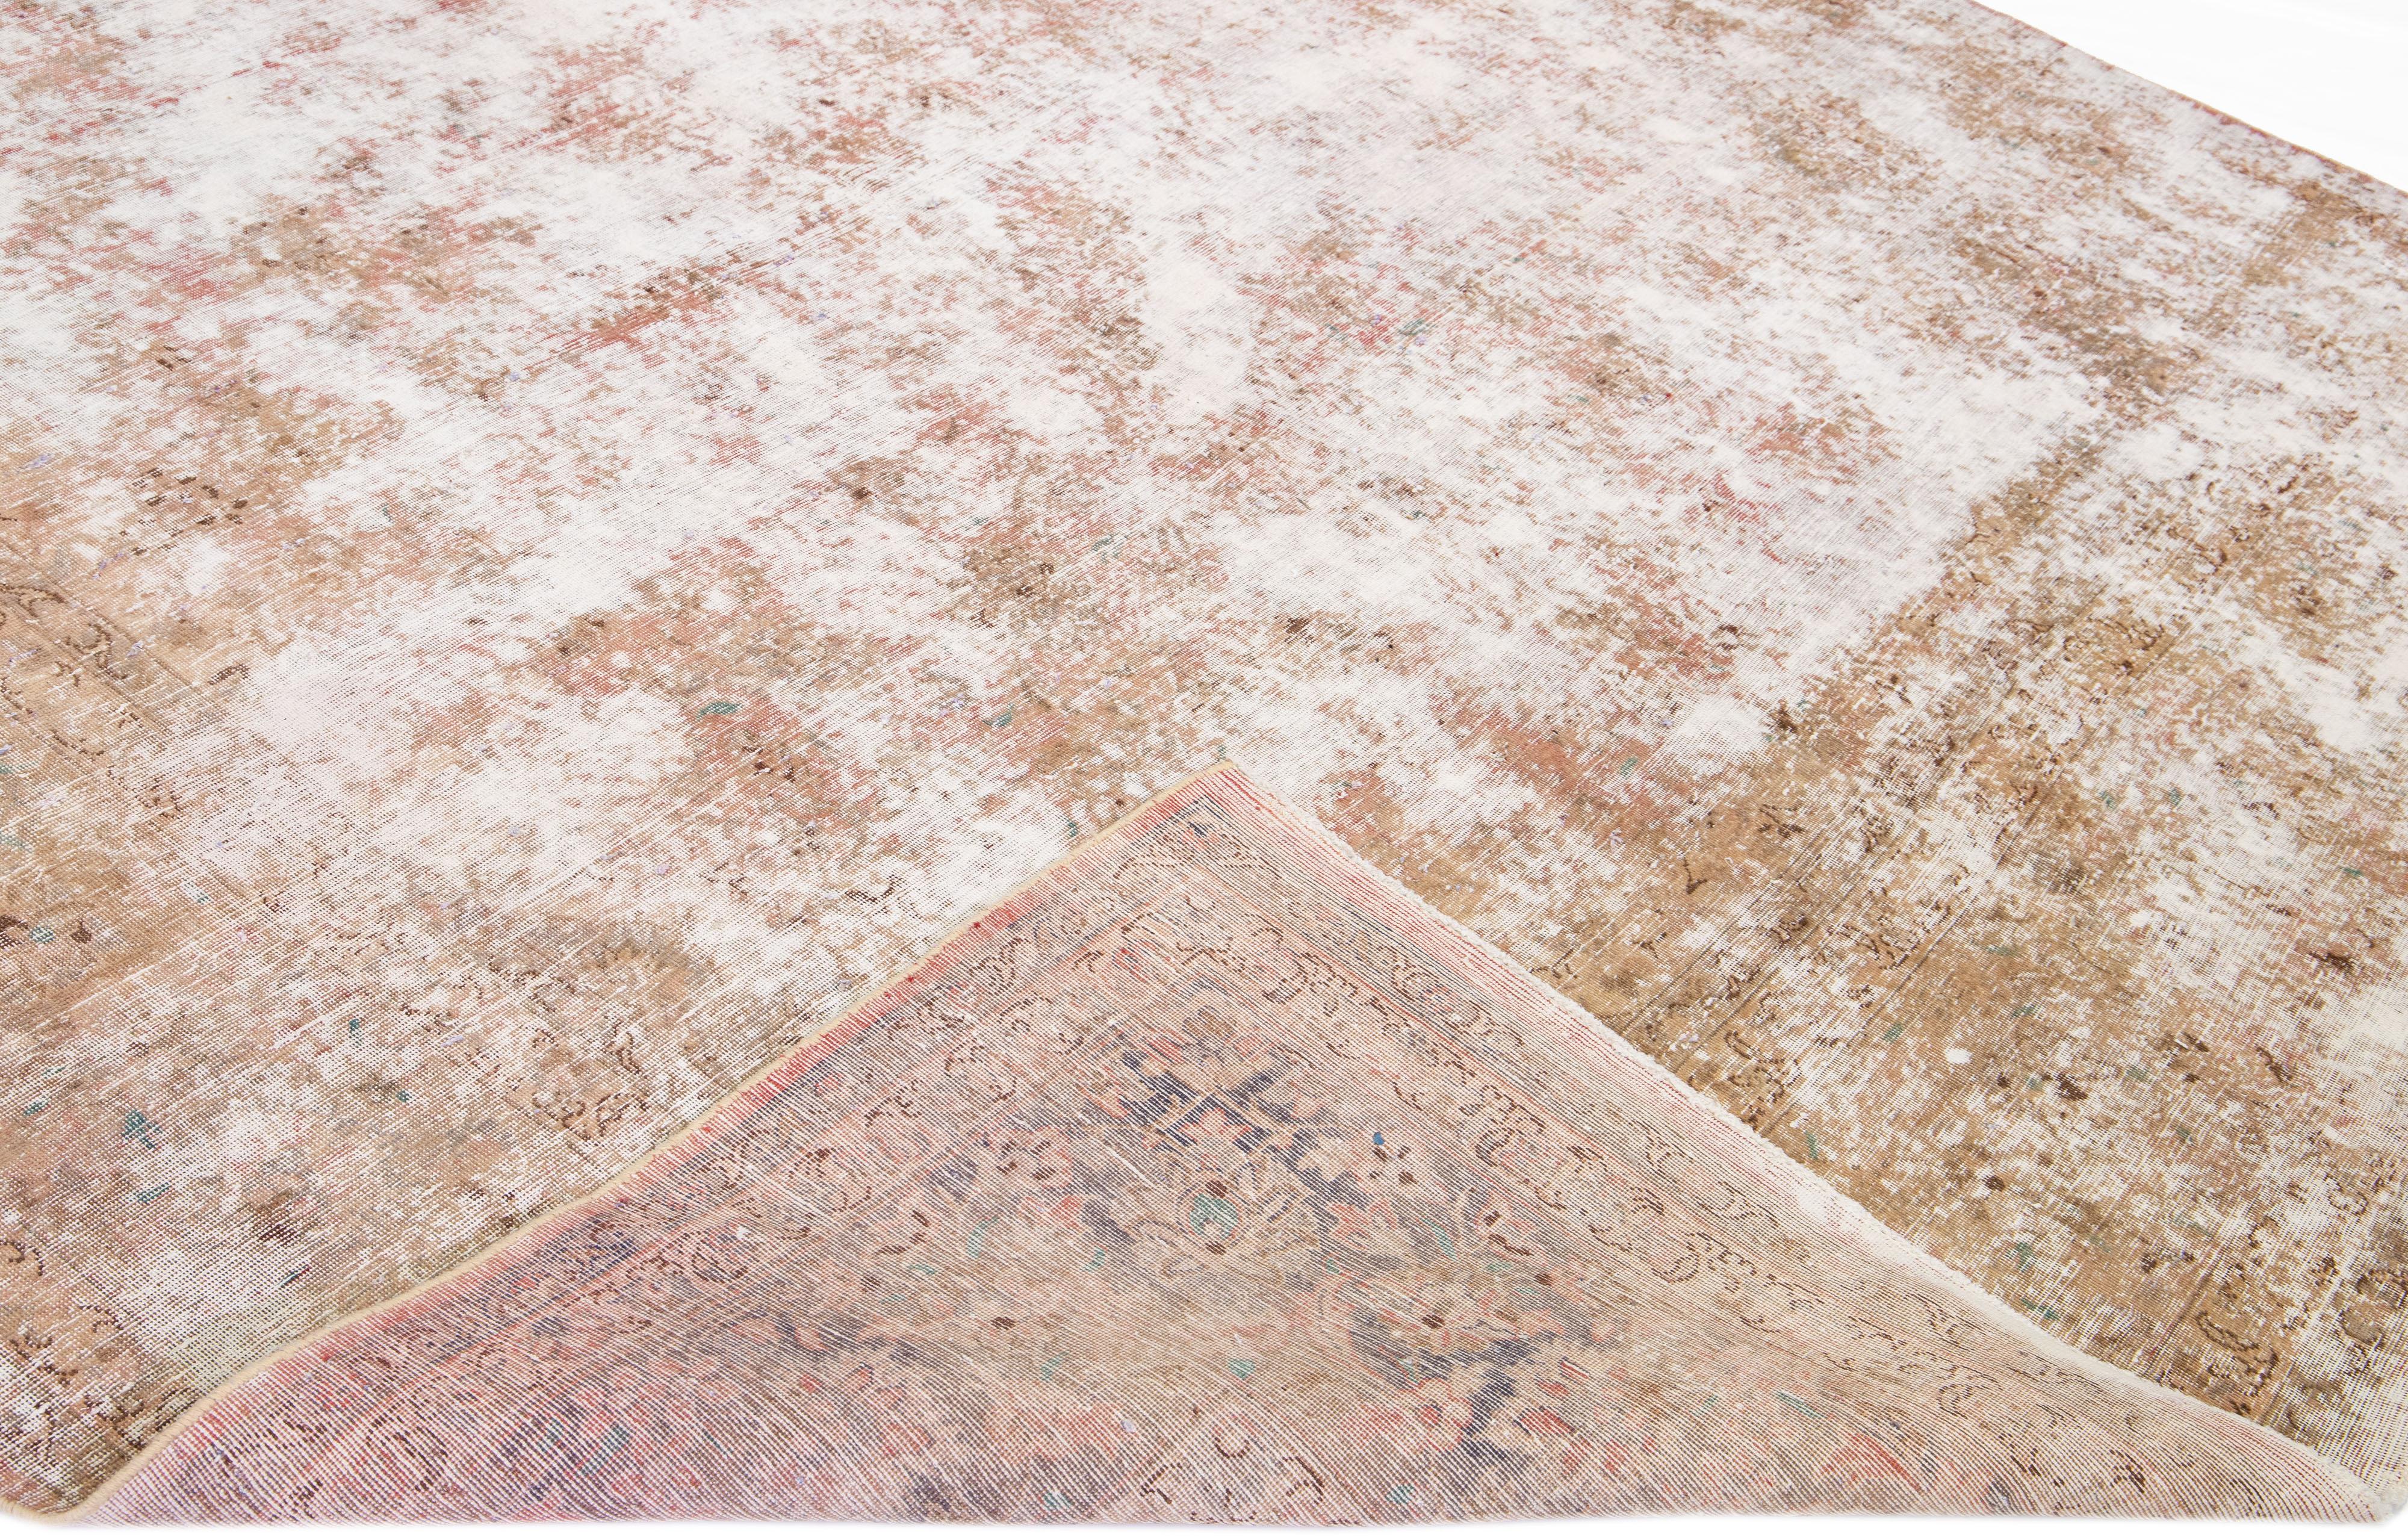 Magnifique tapis ancien en laine Tabriz, noué à la main et de grande taille. Ce tapis présente un champ de couleur rouille avec des accents blanc cassé sur l'ensemble du motif en détresse.

Ce tapis mesure 9' 4' x 19' 4